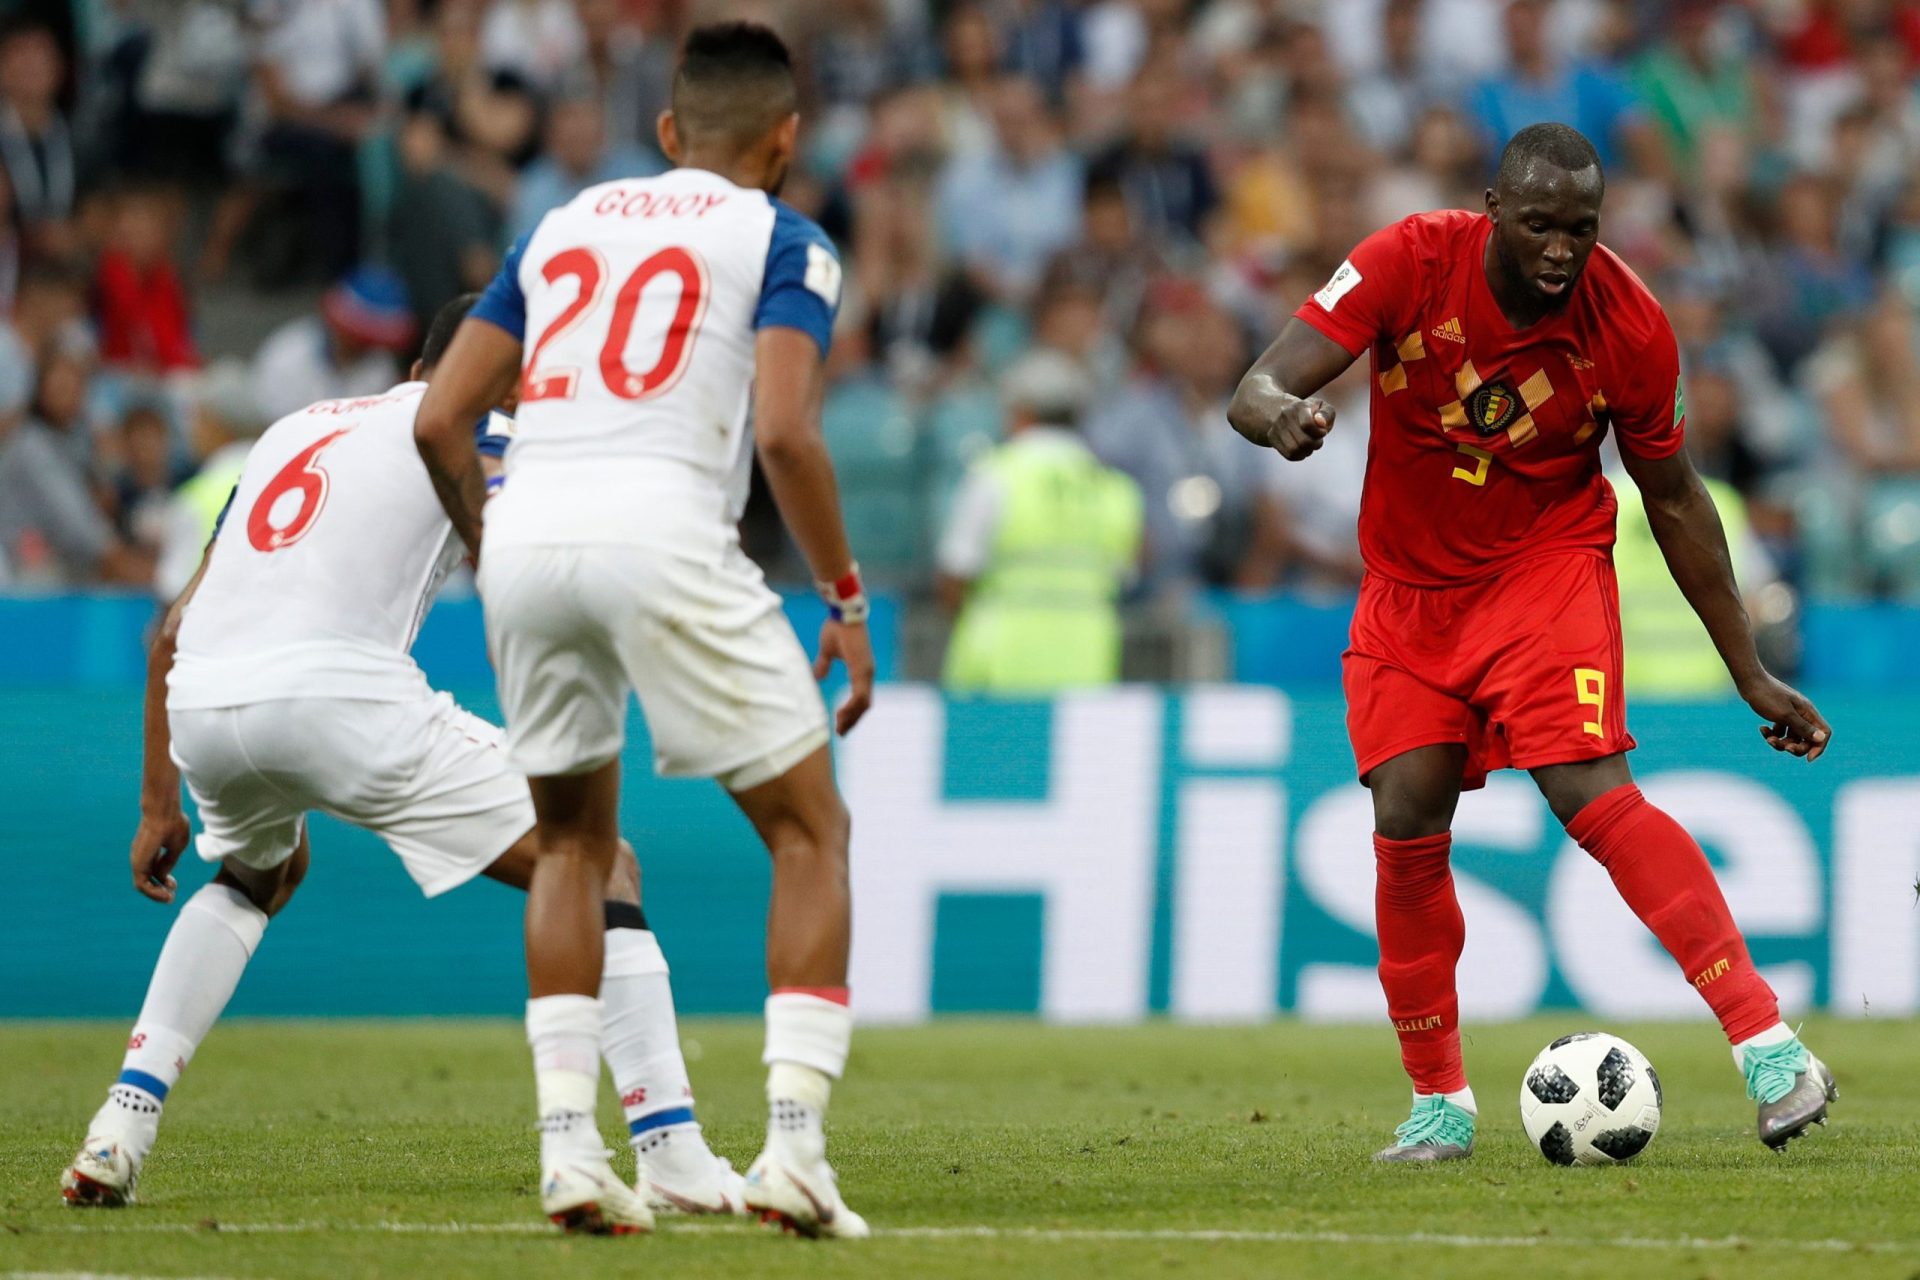 Mundial 2018. Bélgica estreia-se com vitória por 3-0 frente ao Panamá